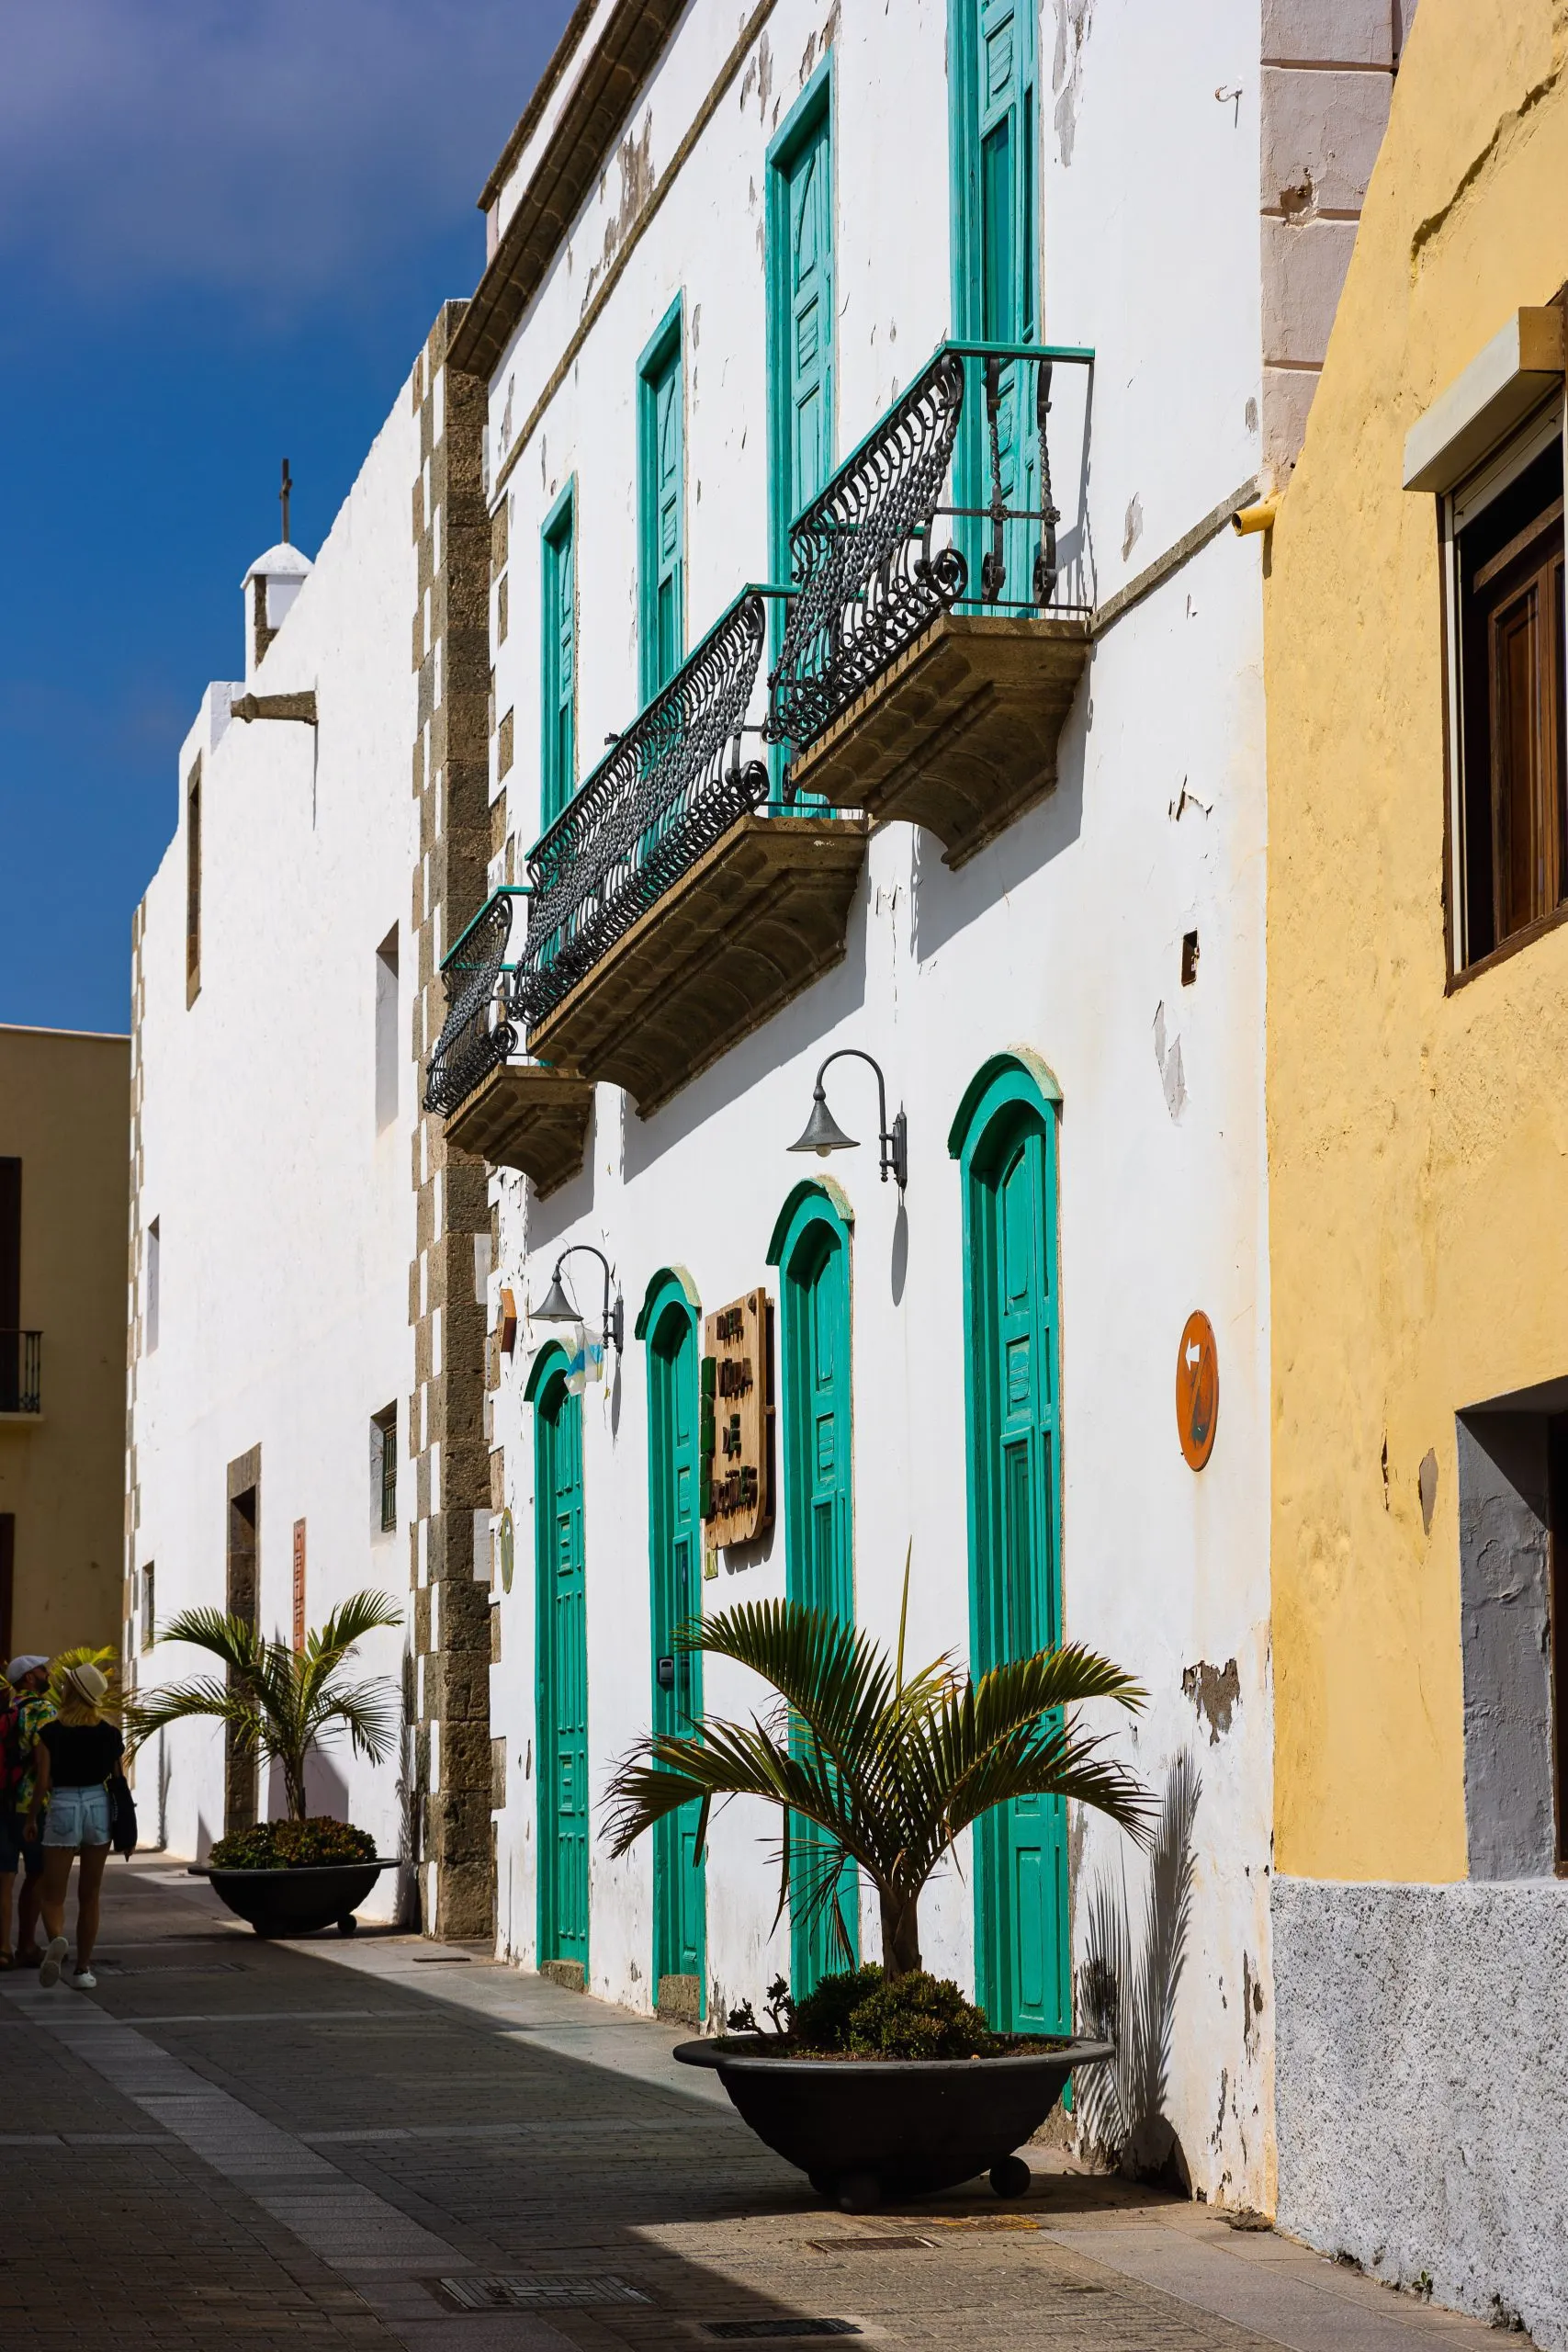 Brostensbelagt gade, gamle huse med traditionelle balkoner i den gamle bydel i Agüimes, Gran Canaria, Spanien.